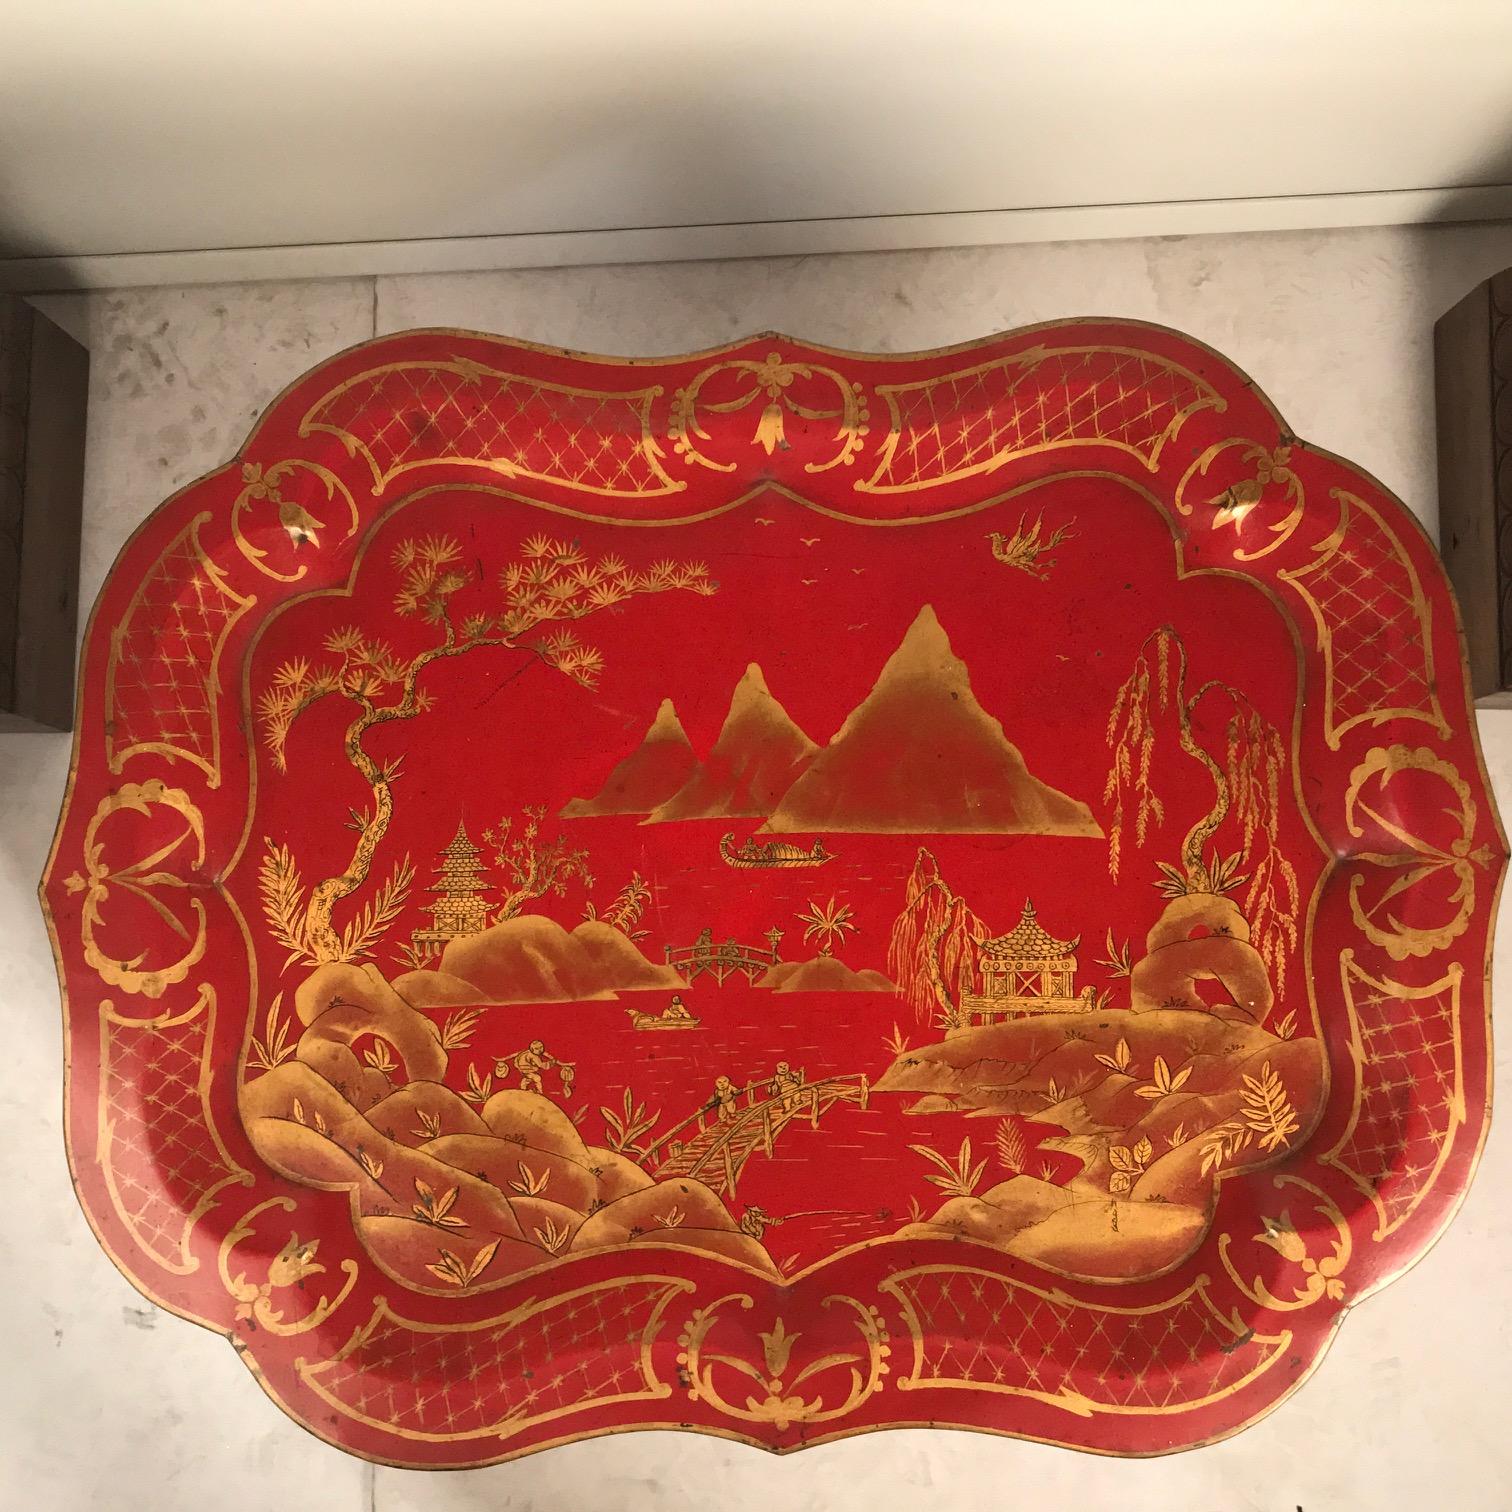 Dieses Tablett ist ein englisches viktorianisches, gut vergoldetes Tablett mit einem Chinoiserie-Dekor aus Pavillons, Brücken und Fischern in einer ausgedehnten Berglandschaft in einem geformten und vergoldeten Rahmen. Scharlachrote Tabletts wie